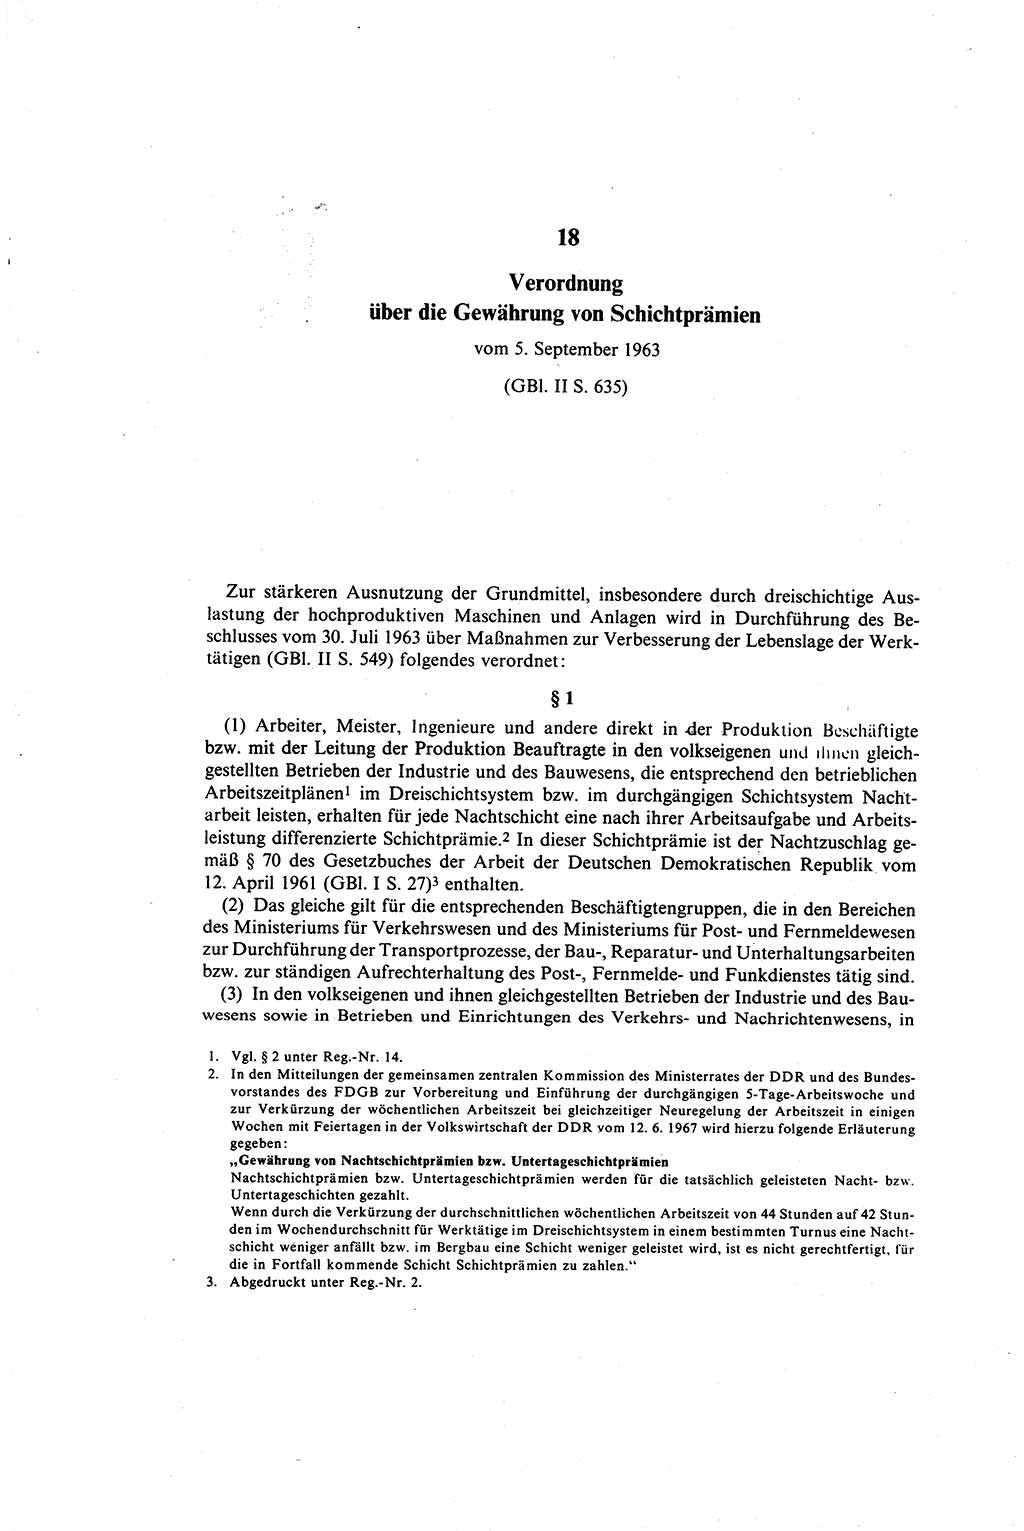 Gesetzbuch der Arbeit (GBA) und andere ausgewählte rechtliche Bestimmungen [Deutsche Demokratische Republik (DDR)] 1968, Seite 250 (GBA DDR 1968, S. 250)